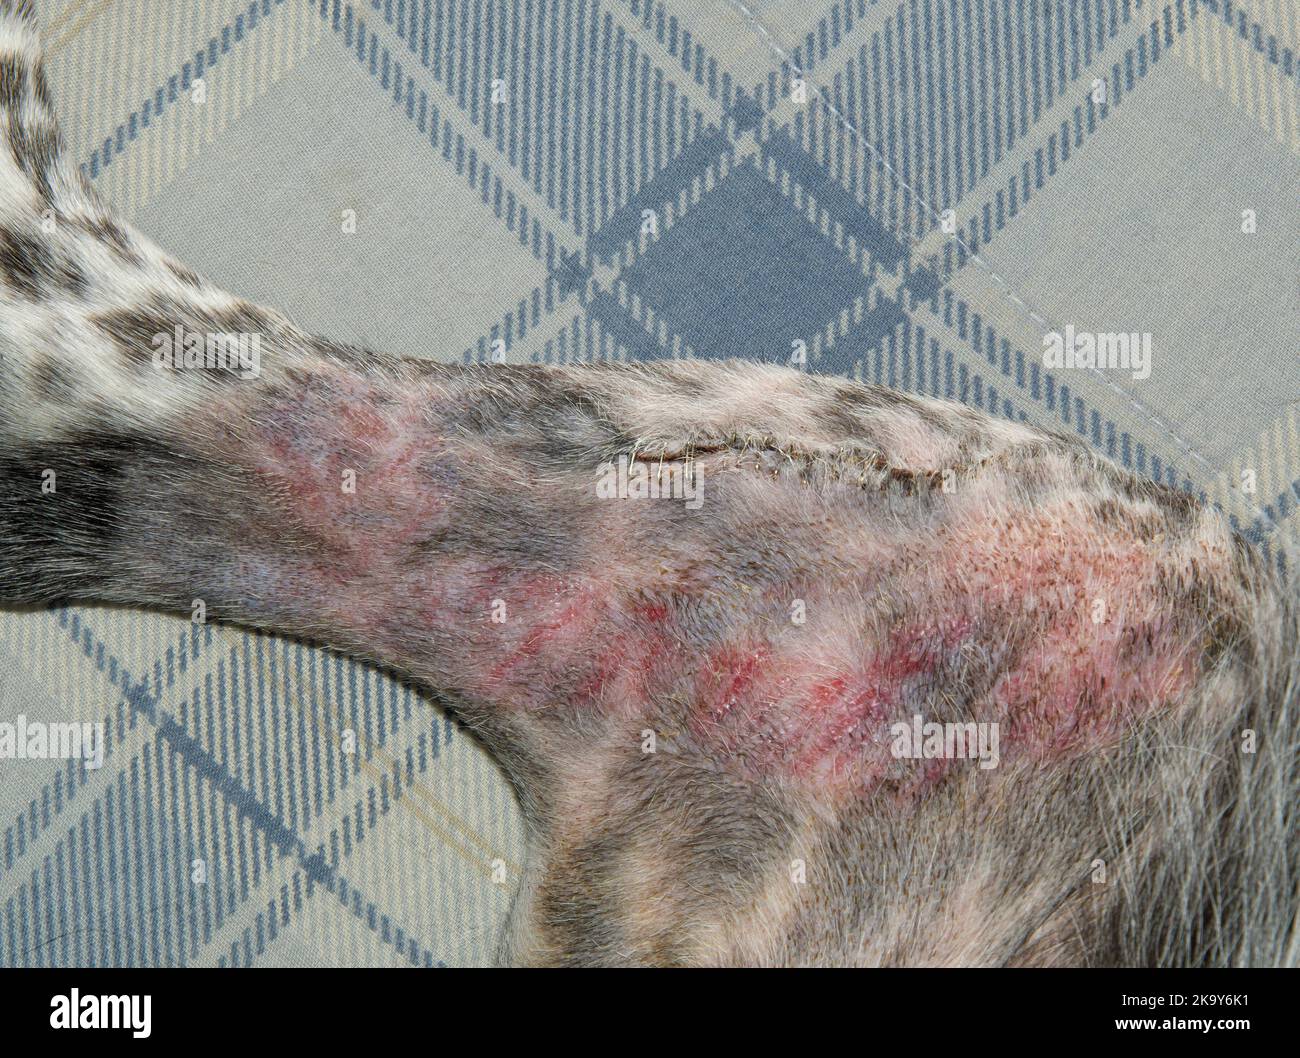 Grapas de metal en el interior de la rodilla y pierna de un perro después de una cirugía de TPLO, con la incisión casi curada. Marcas rojas en la piel causadas por la adherencia bandag Foto de stock